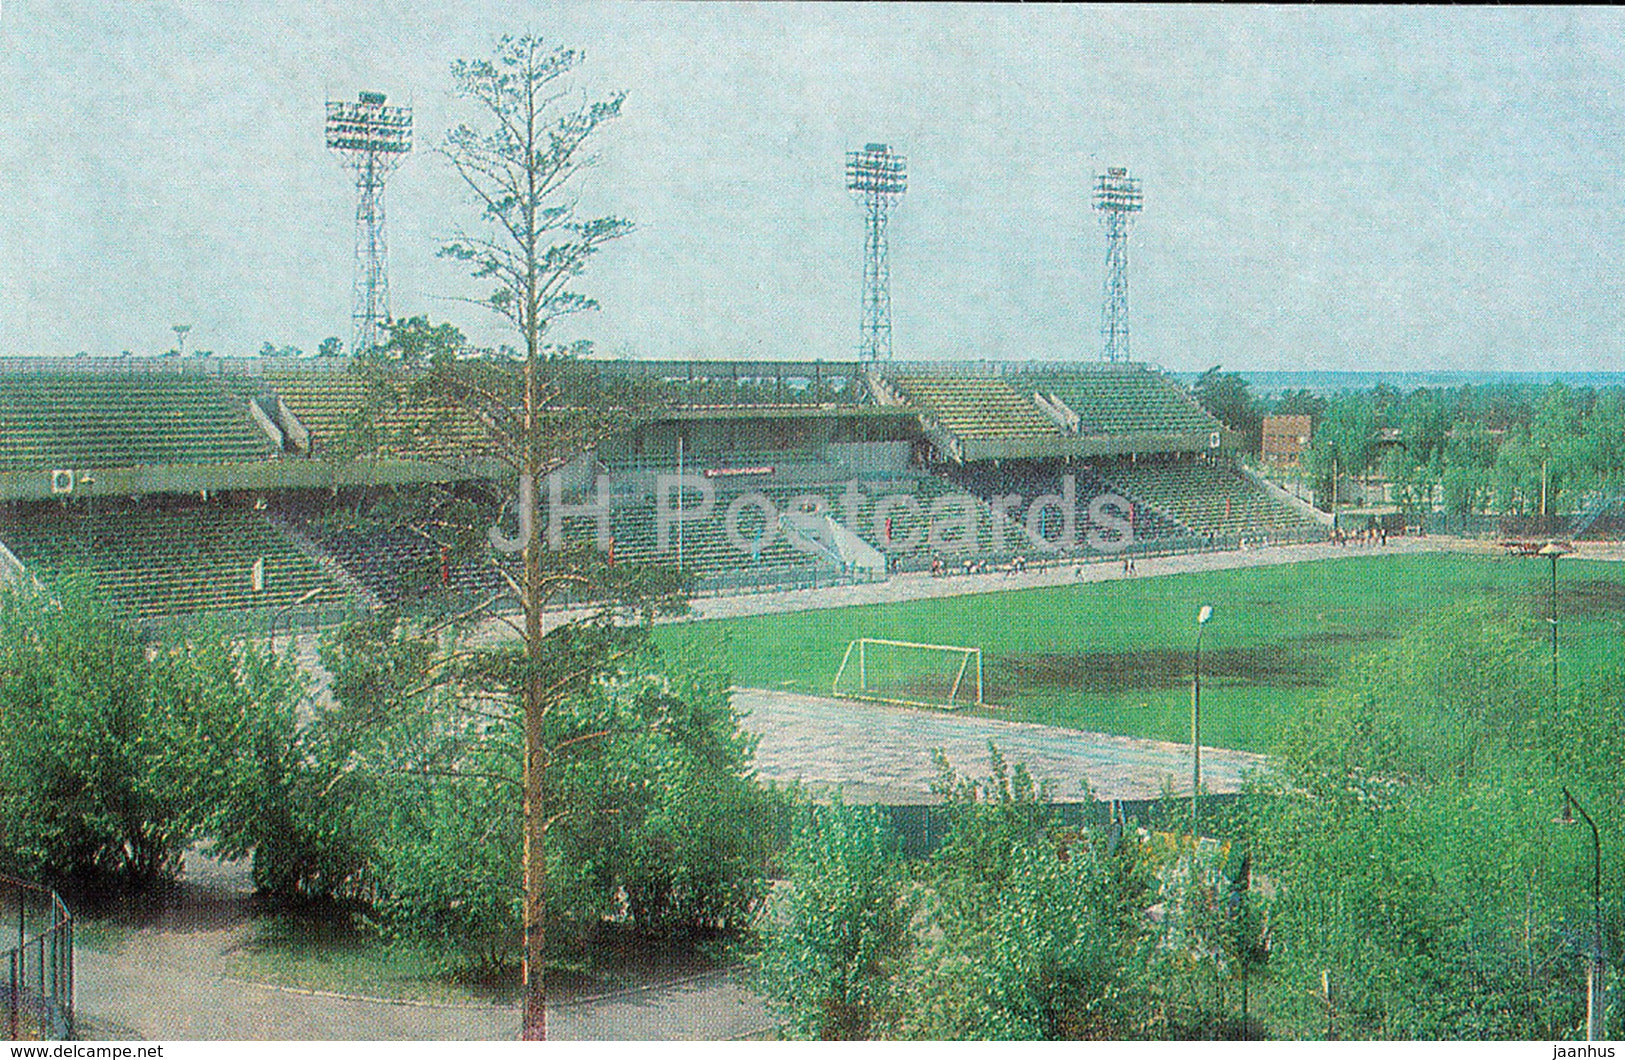 Angarsk - Angara stadium - 1986 - Russia USSR - unused - JH Postcards